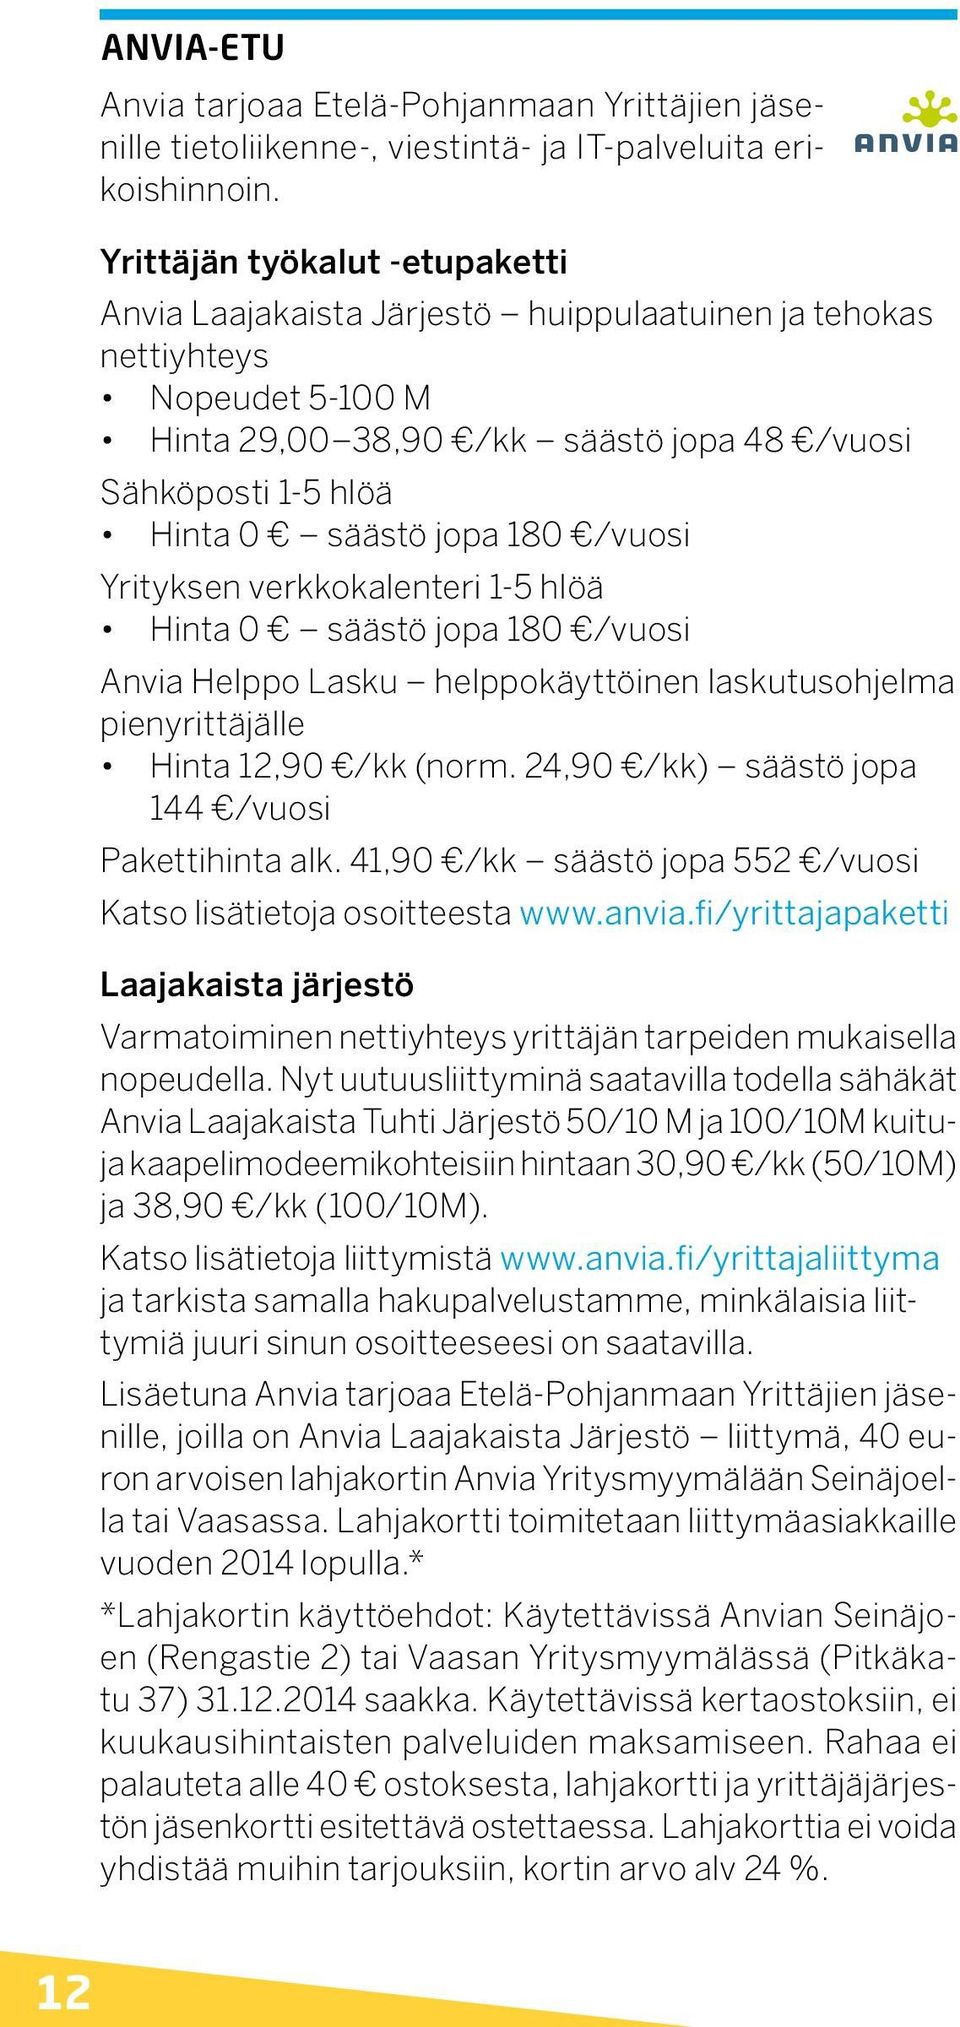 180 /vuosi Yrityksen verkkokalenteri 1-5 hlöä Hinta 0 säästö jopa 180 /vuosi Anvia Helppo Lasku helppokäyttöinen laskutusohjelma pienyrittäjälle Hinta 12,90 /kk (norm.